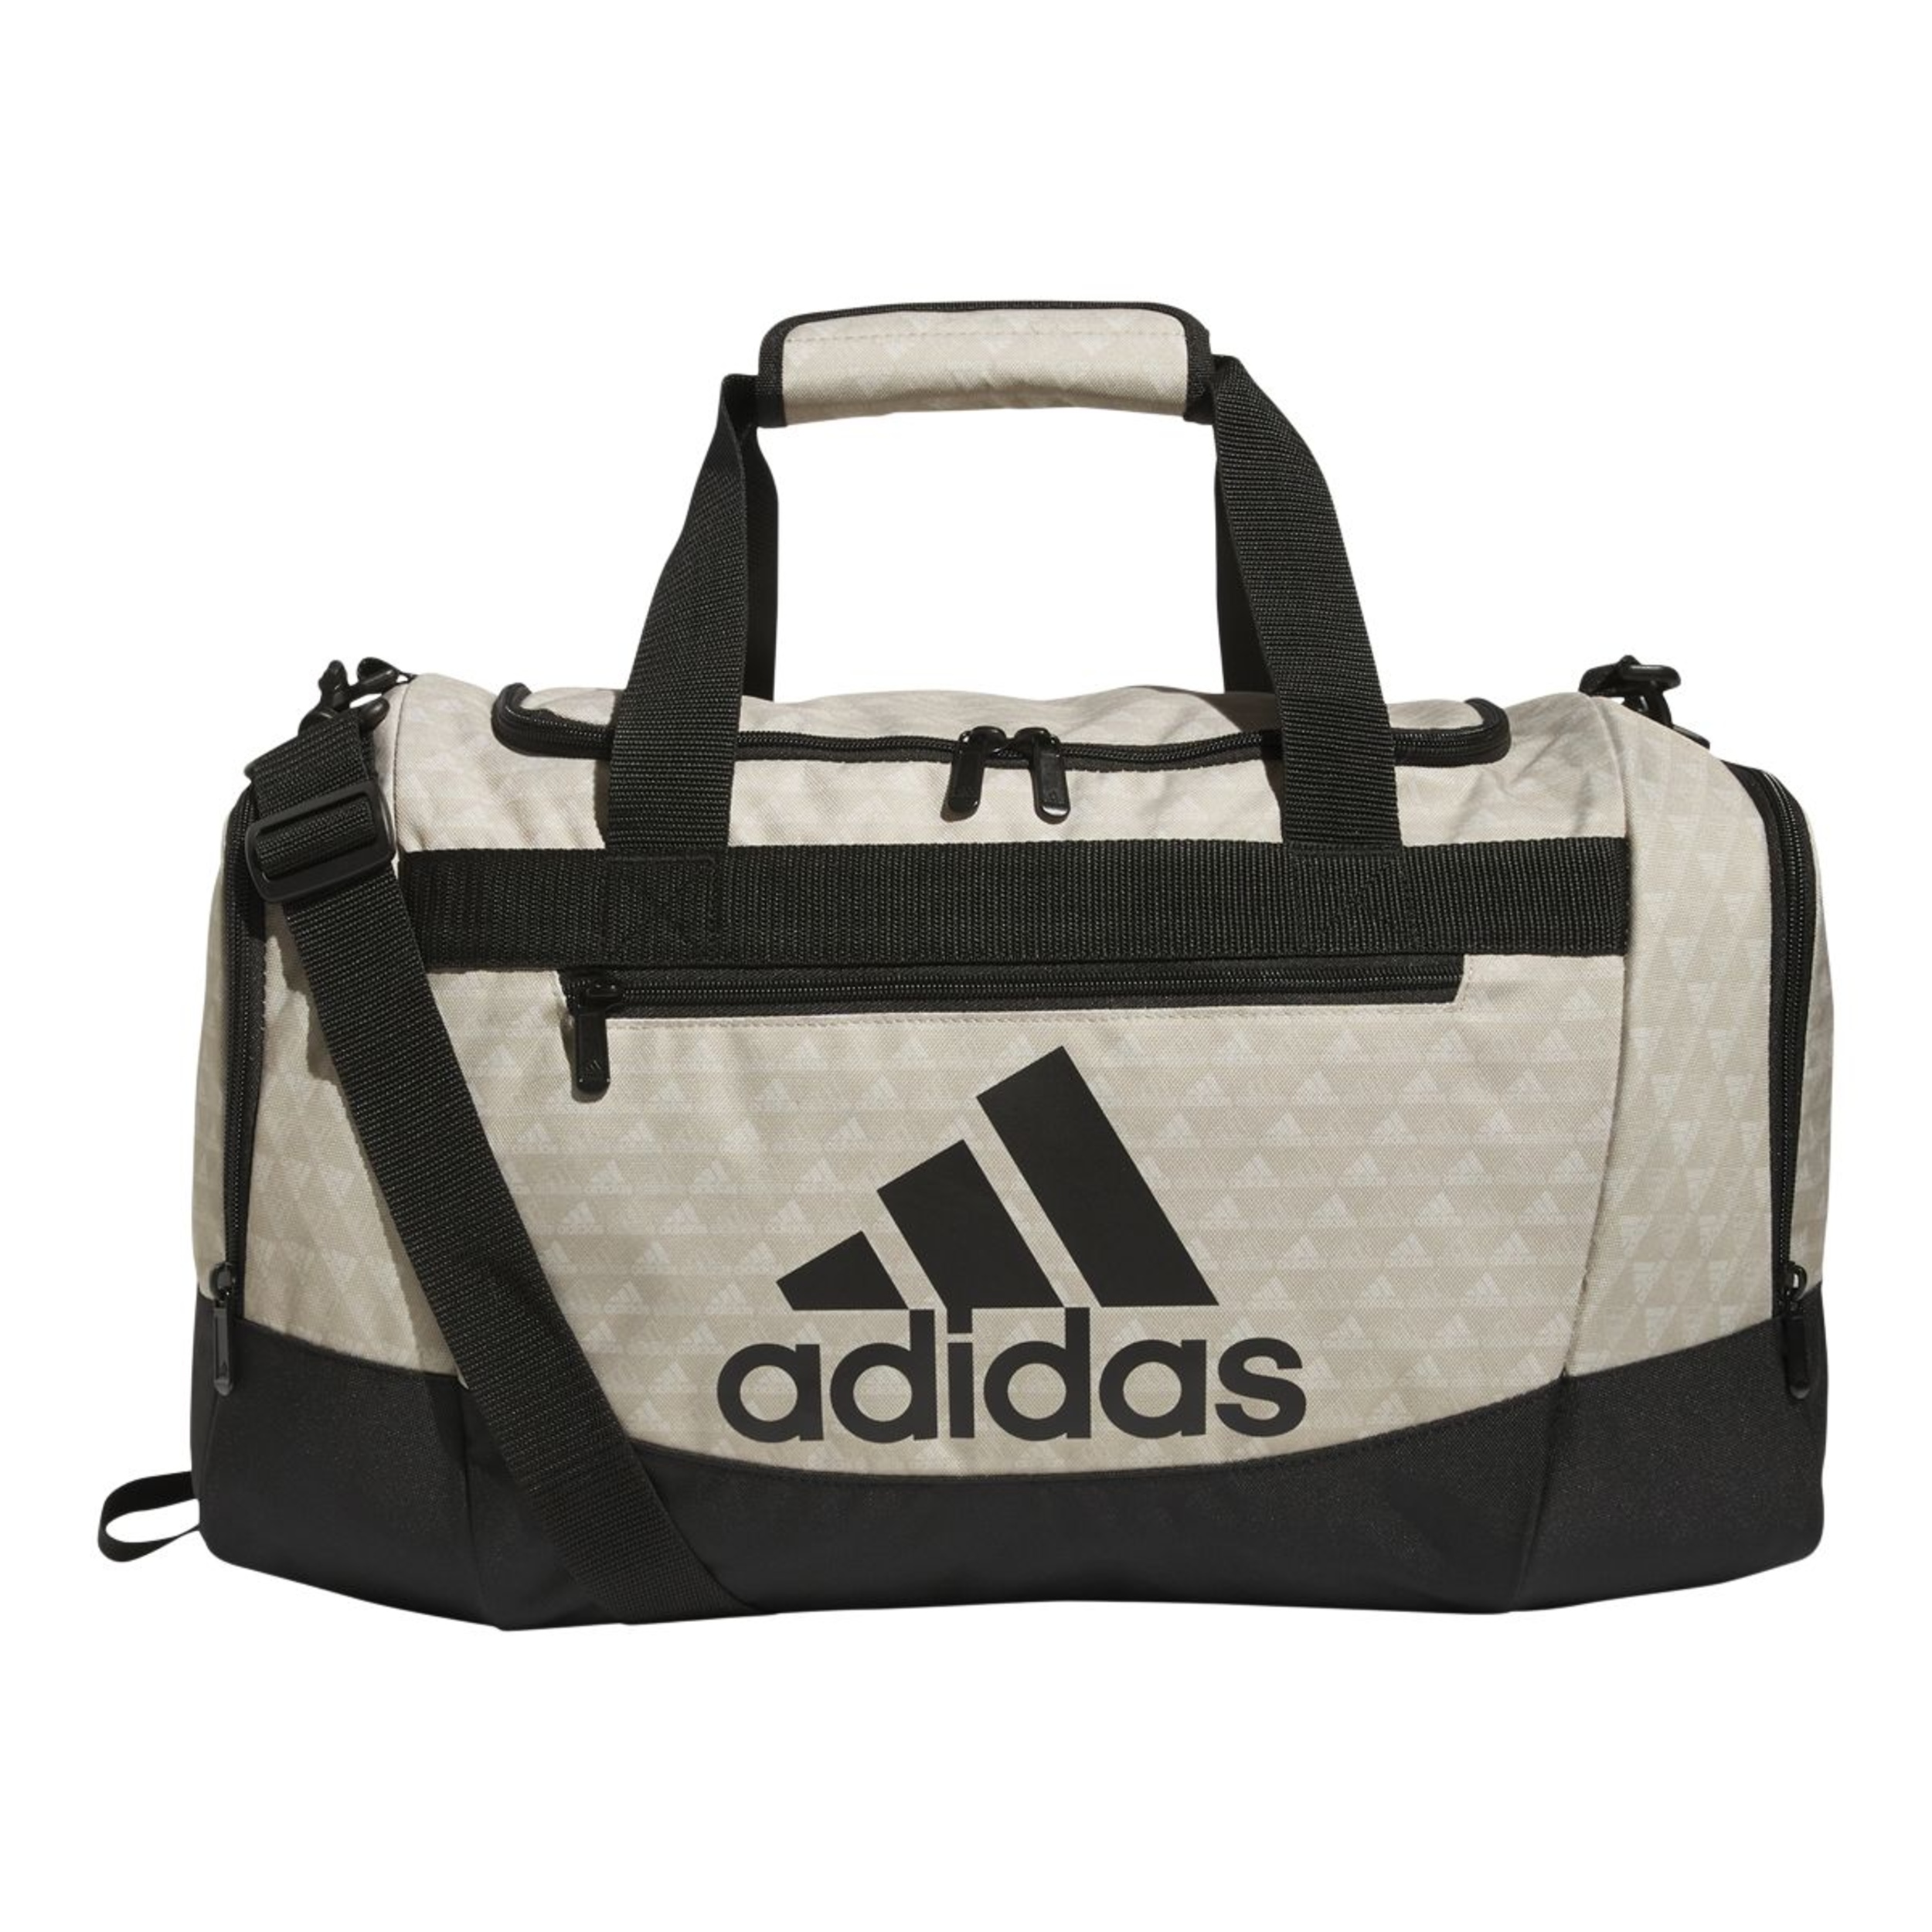 adidas Defender IV Duffel Bag, Small | SportChek